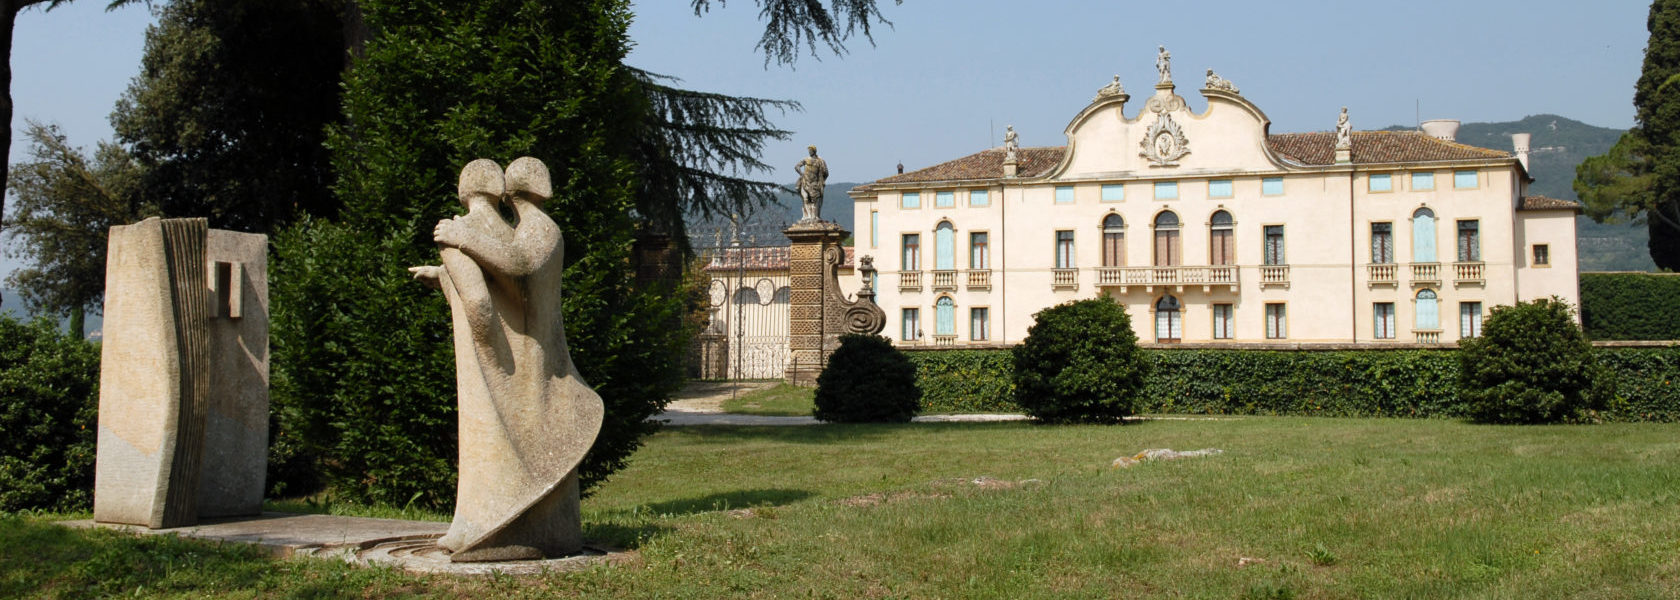 Scultura in pietra di due figure in primo piano in esposizione nel Parco della Villa di Montruglio, con sfondo della Facciata.